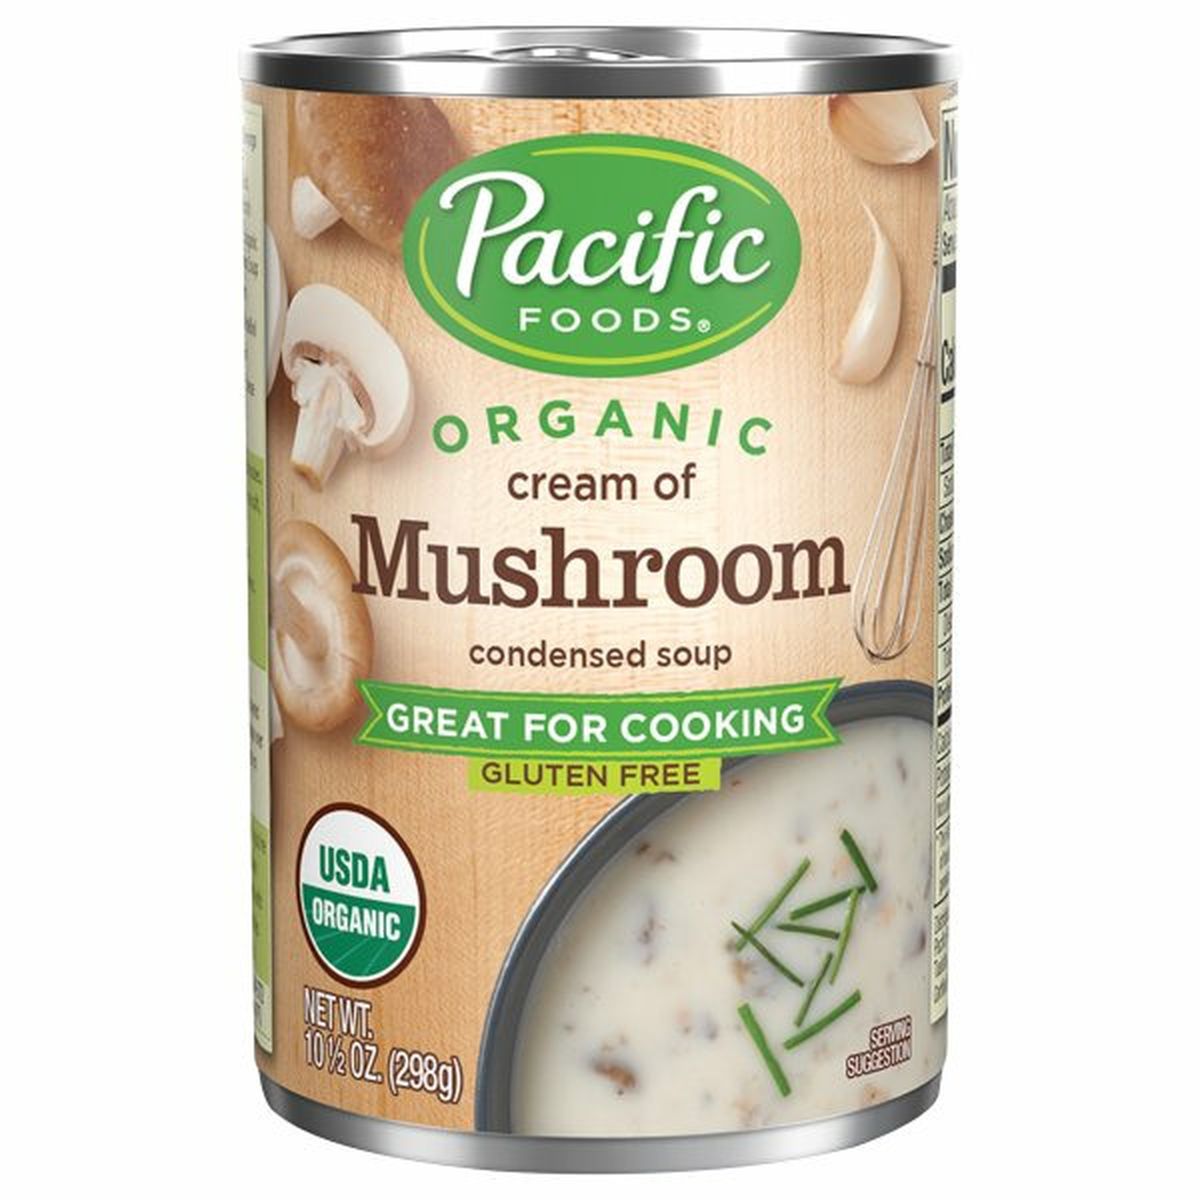 Calories in Pacific Condensed Soup, Organic, Cream of Mushroom